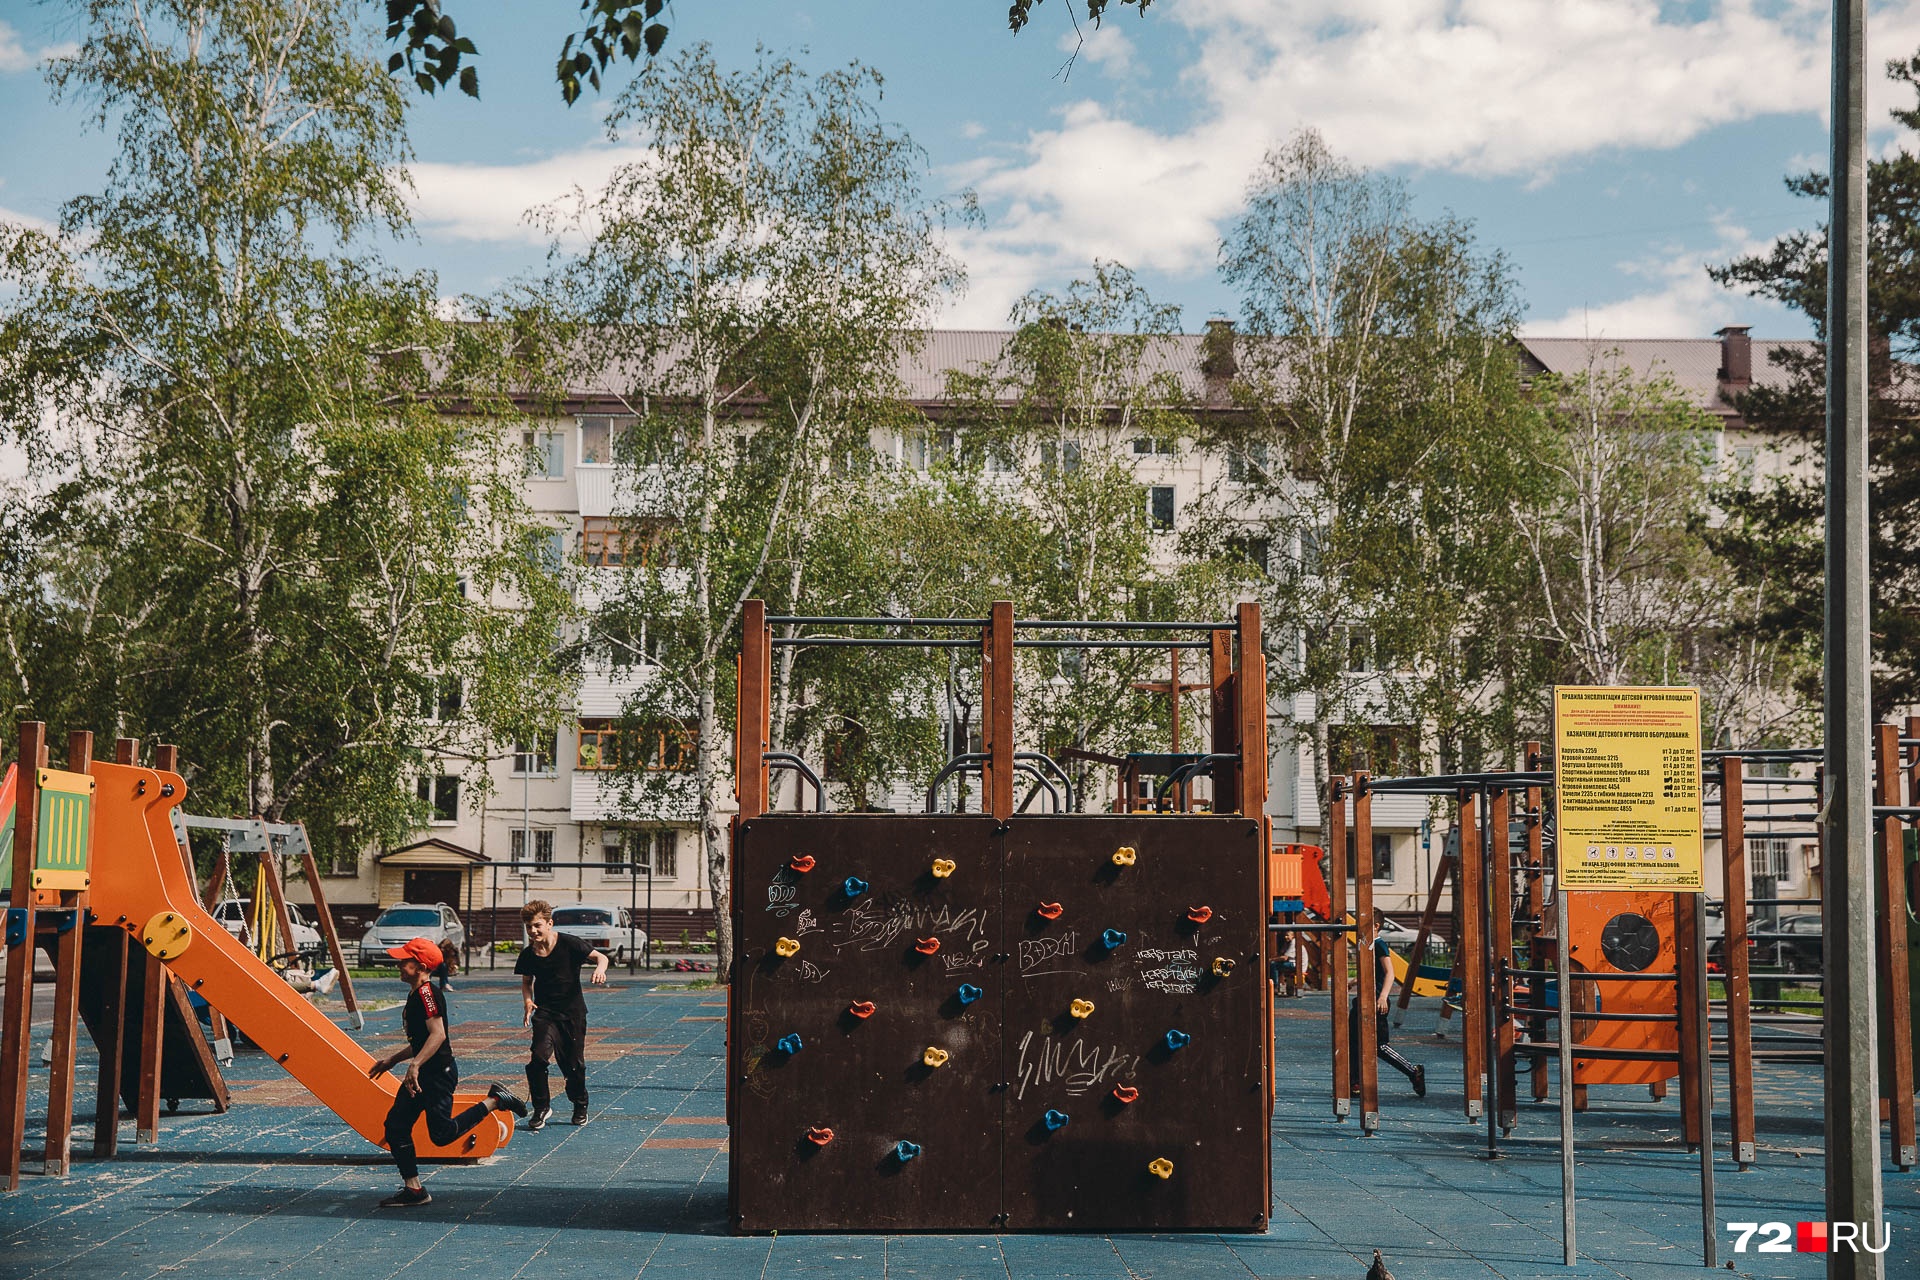 А вот советские детские площадки уже почти везде заменили новыми. Правда, местная ребятня решила дополнительно их украсить. Некоторые выбрали в качестве элемента дизайна нецензурные слова